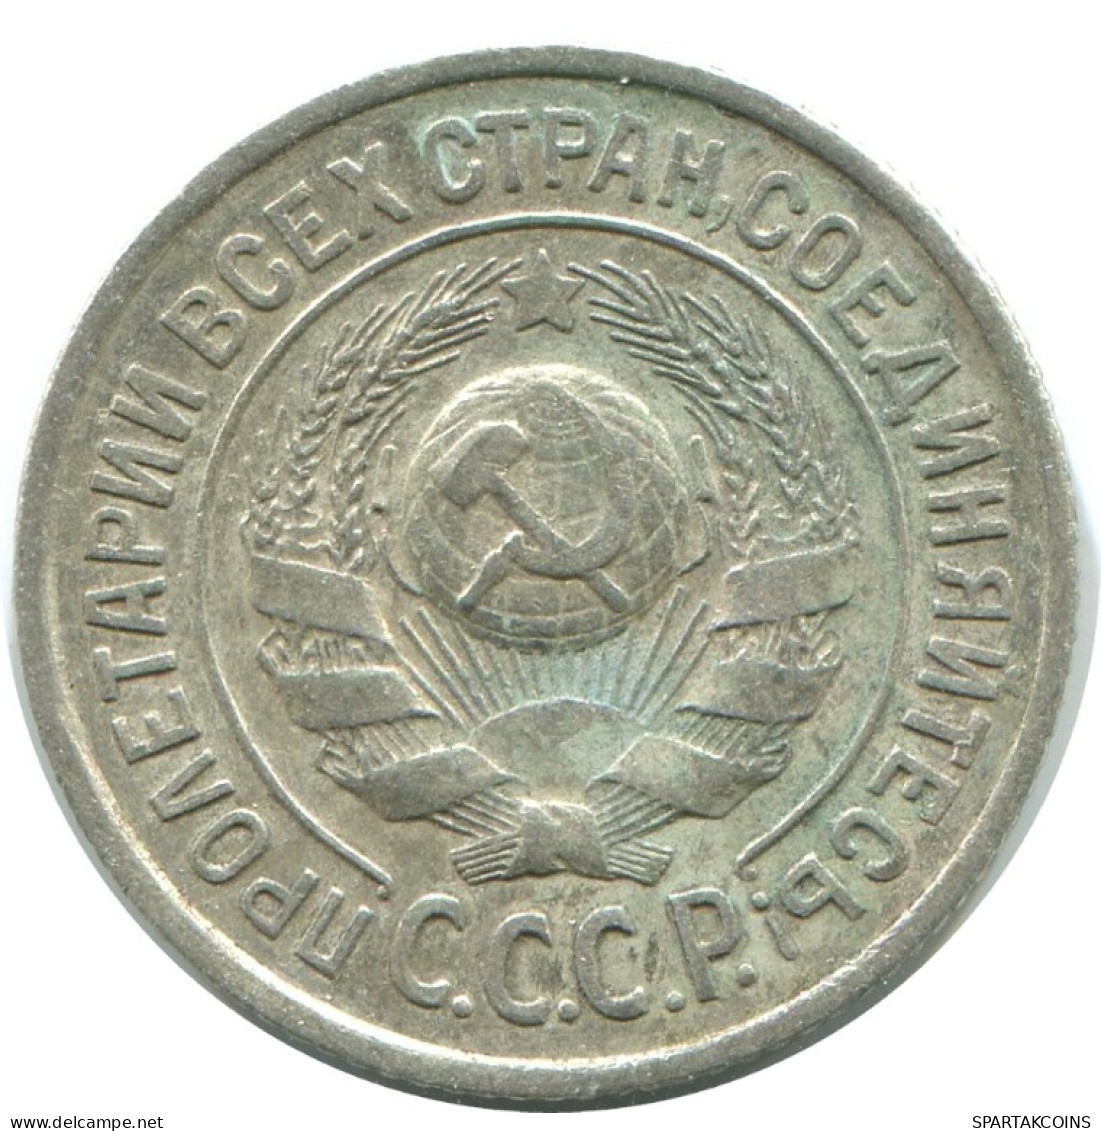 15 KOPEKS 1925 RUSSLAND RUSSIA USSR SILBER Münze HIGH GRADE #AF255.4.D.A - Rusia